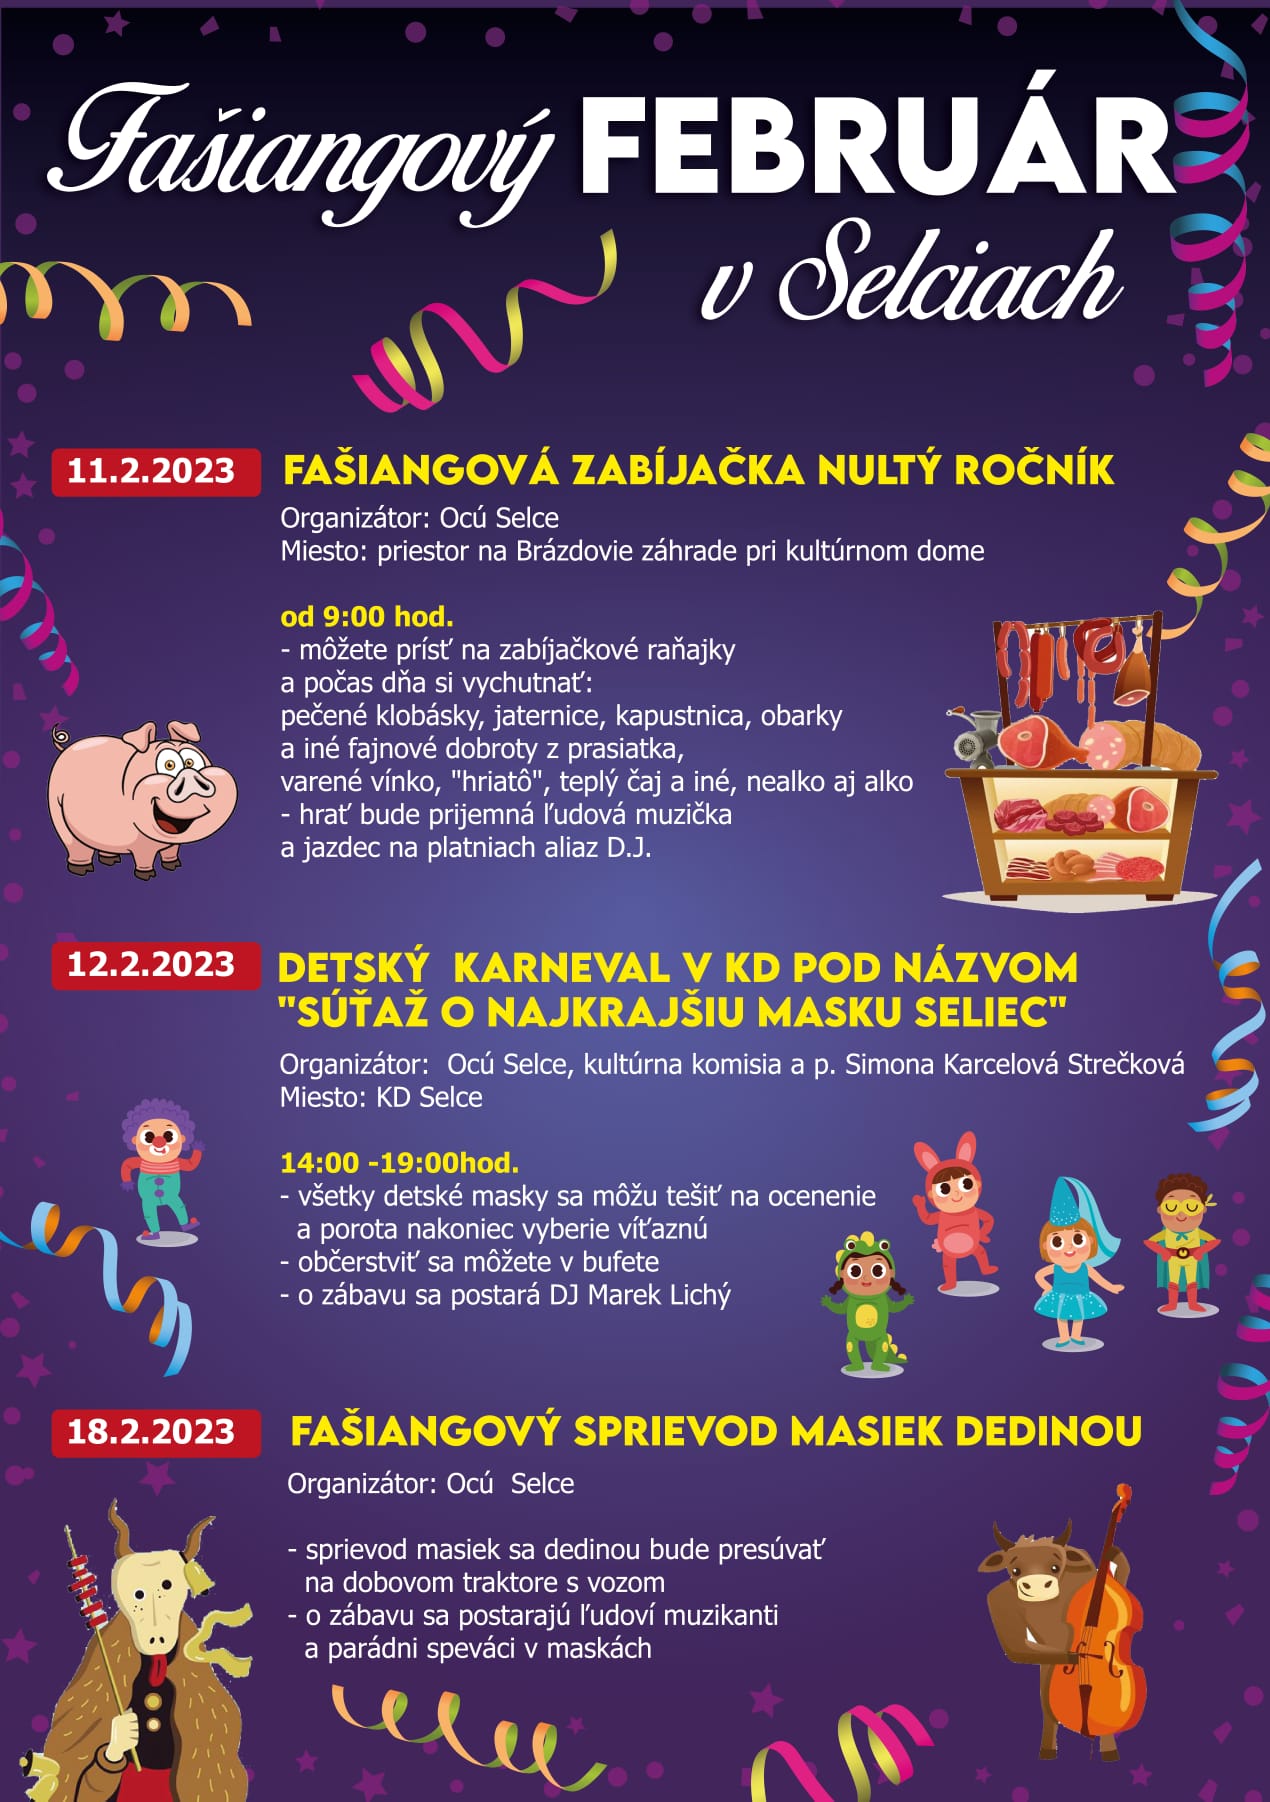 Faiangov februr v Selciach 2023 - faianov zabjaka a detsk karneval a sprievod masiek dedinou